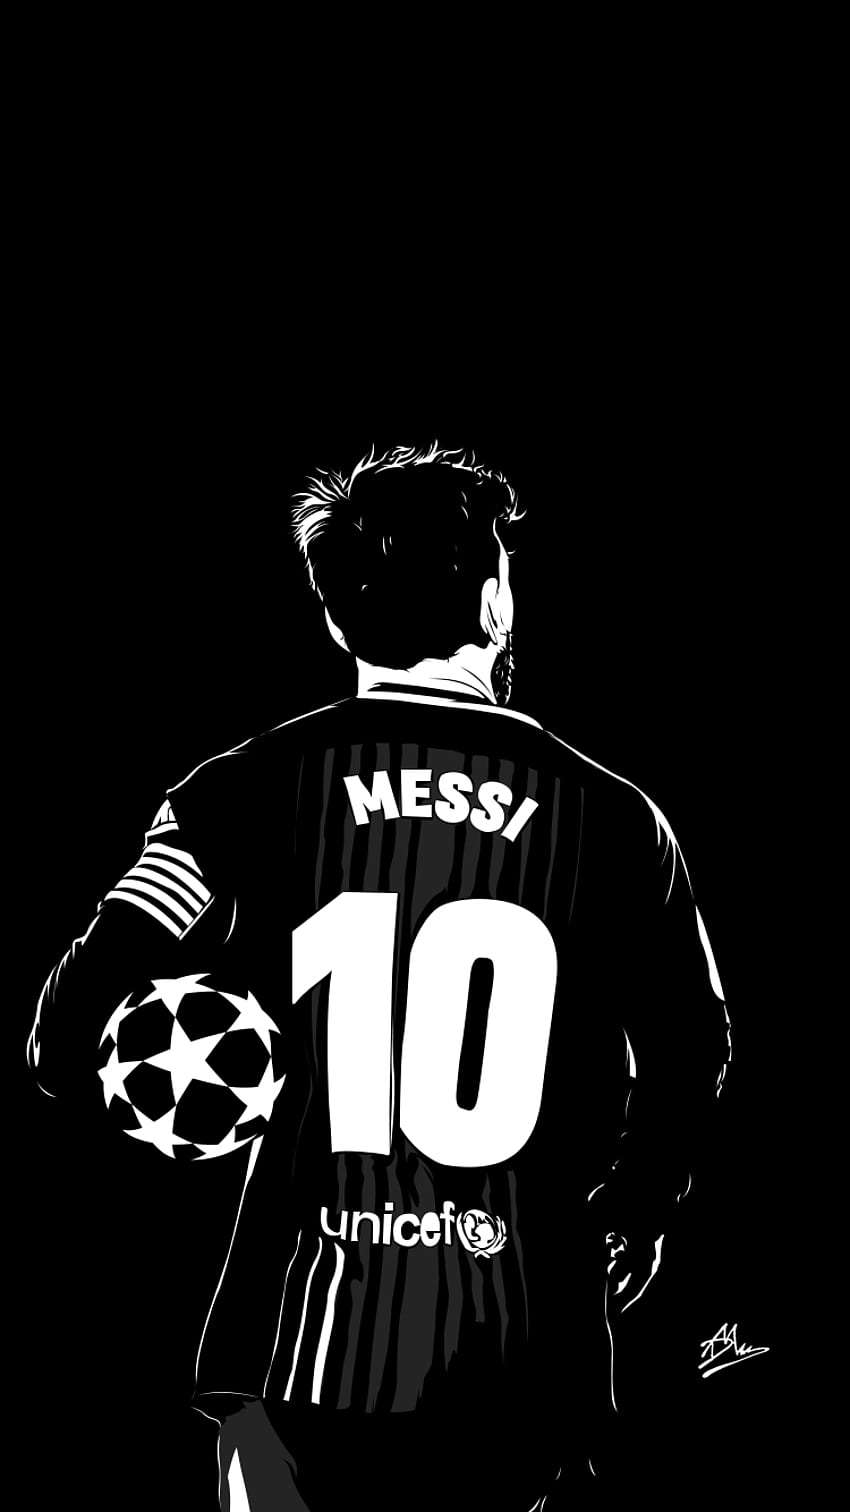 Messi HD là sự kết hợp hoàn hảo giữa tài năng, đam mê, sự nhiệt huyết của đội Messi lẫn fan hâm mộ trên toàn thế giới. Mỗi lần nhìn vào chiếc background này, bạn sẽ cảm nhận được tinh thần chiến đấu của Messi, củng cố niềm tin cho bản thân và truyền động lực cho tất cả những người chơi bóng.